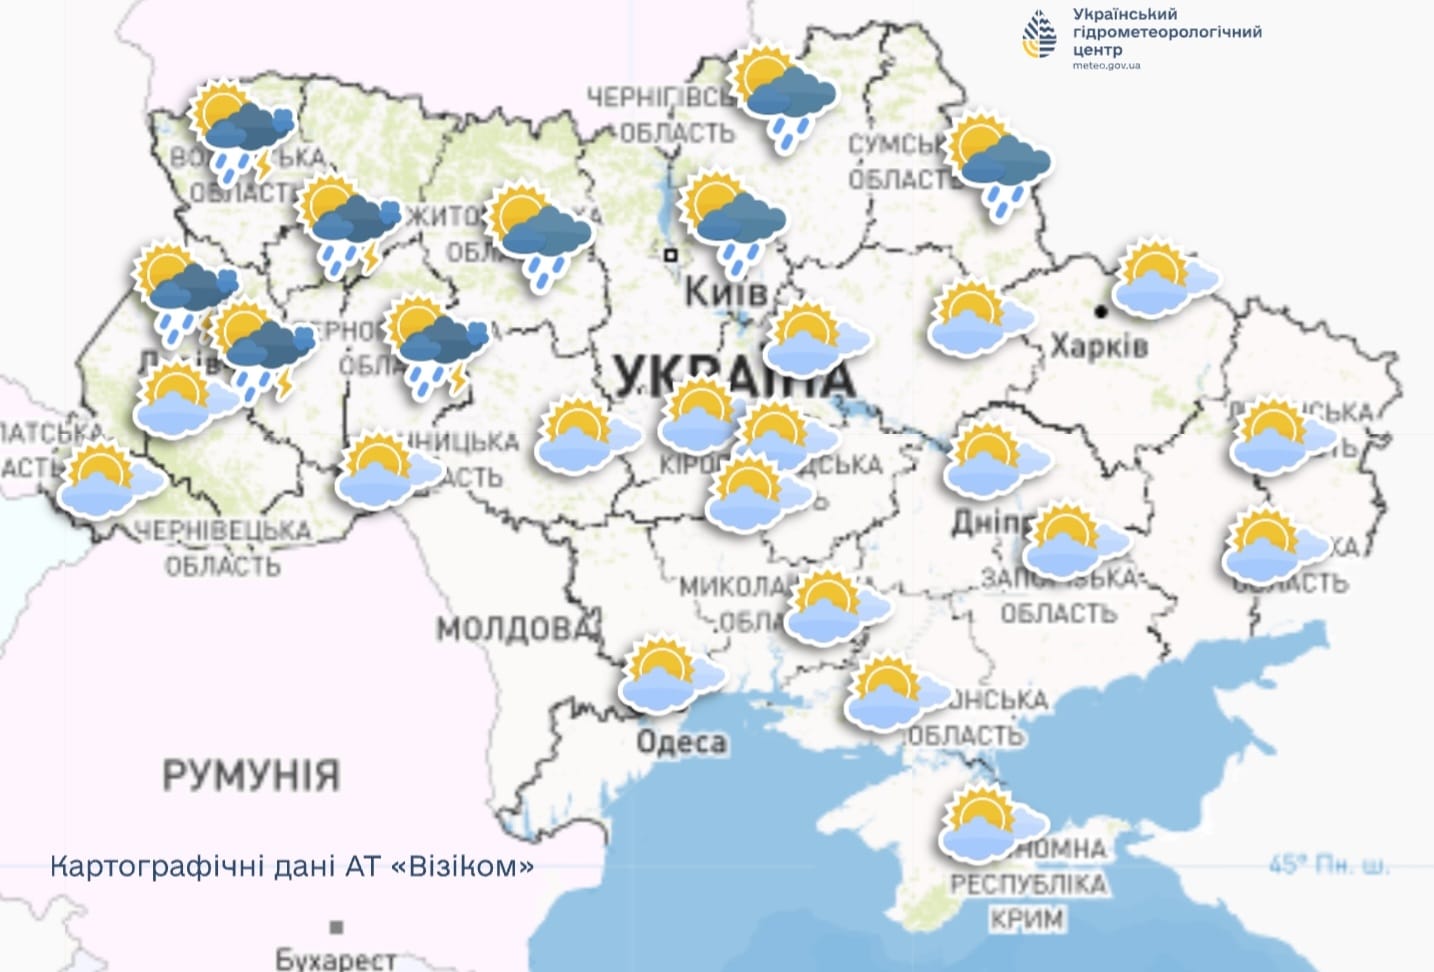 Украинцев предупредили о существенном изменении погоды после периода аномальной жары 